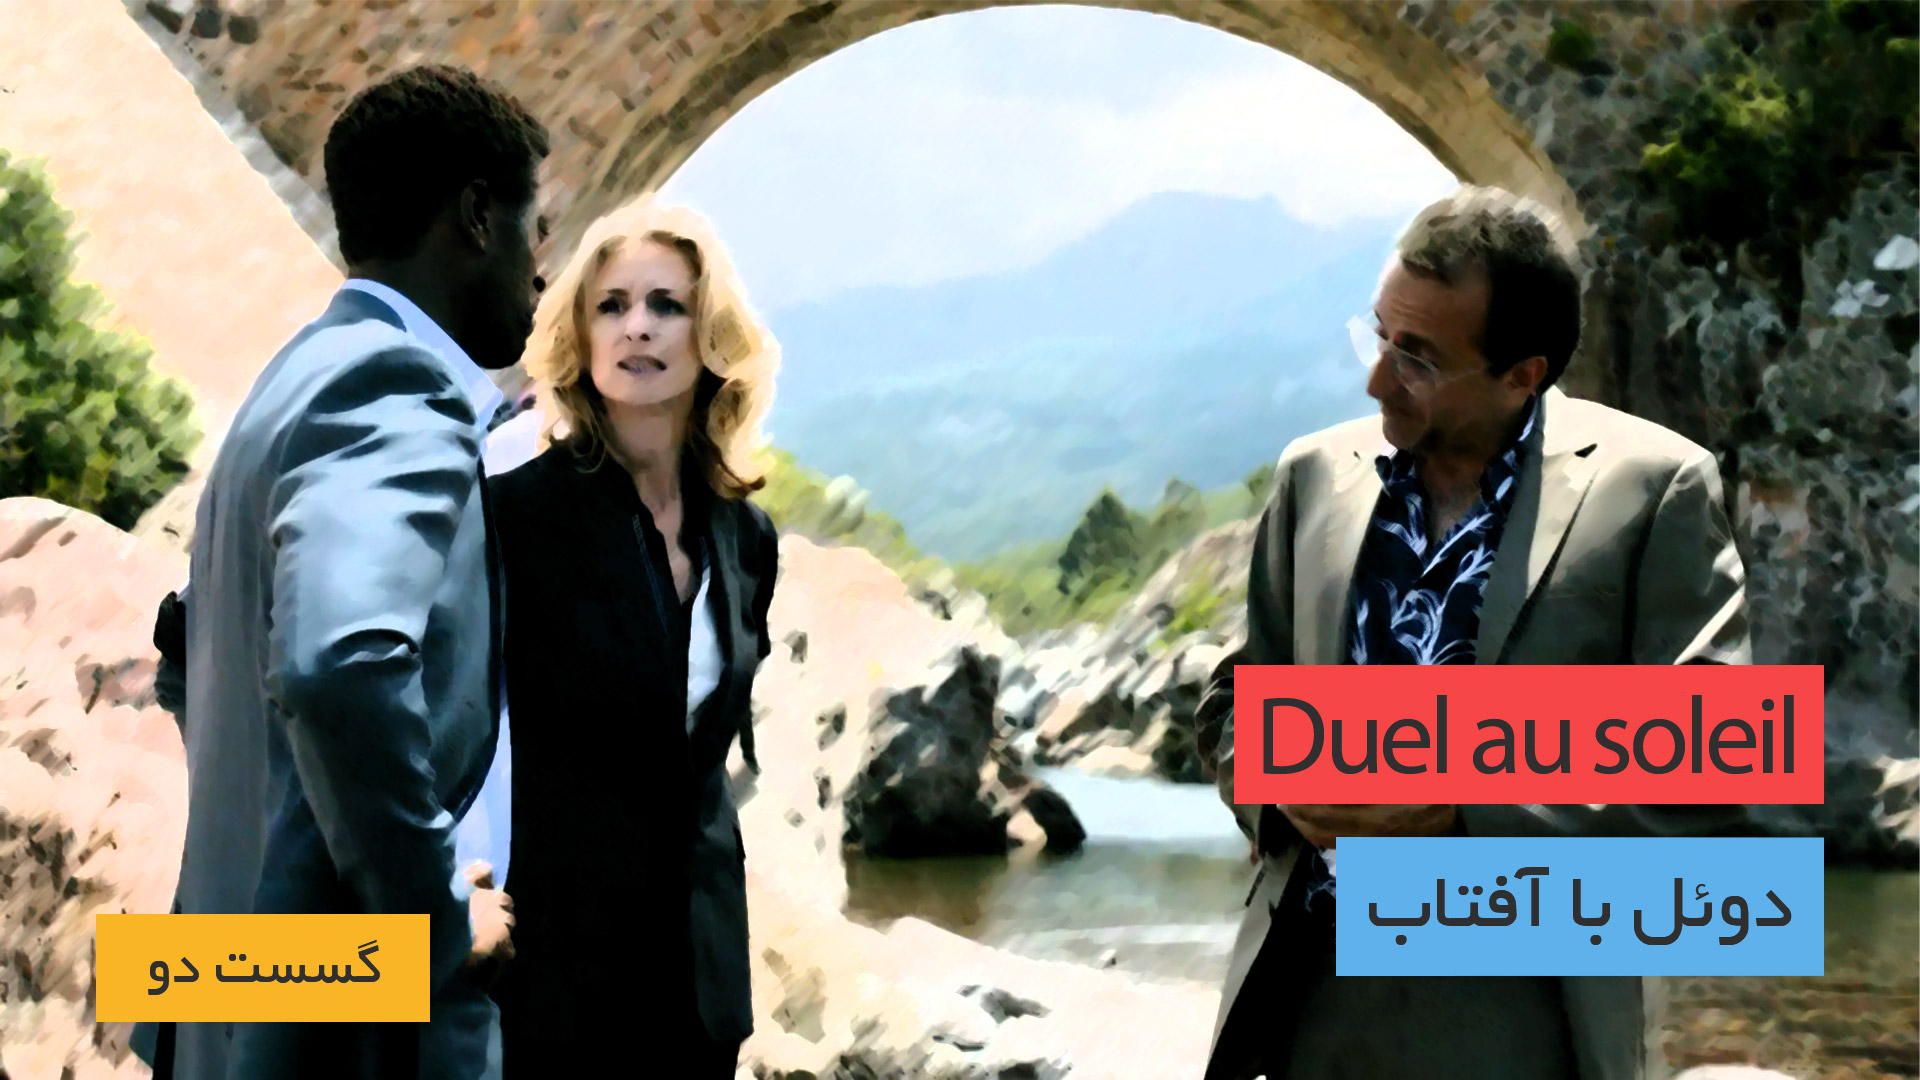 دانلود سریال فرانسوی Duel au soleil - Saison 2 (نبرد تن به تن با خورشید - گسست 2) برونداد سال 2016 و در گونه جنایی و رازآلود